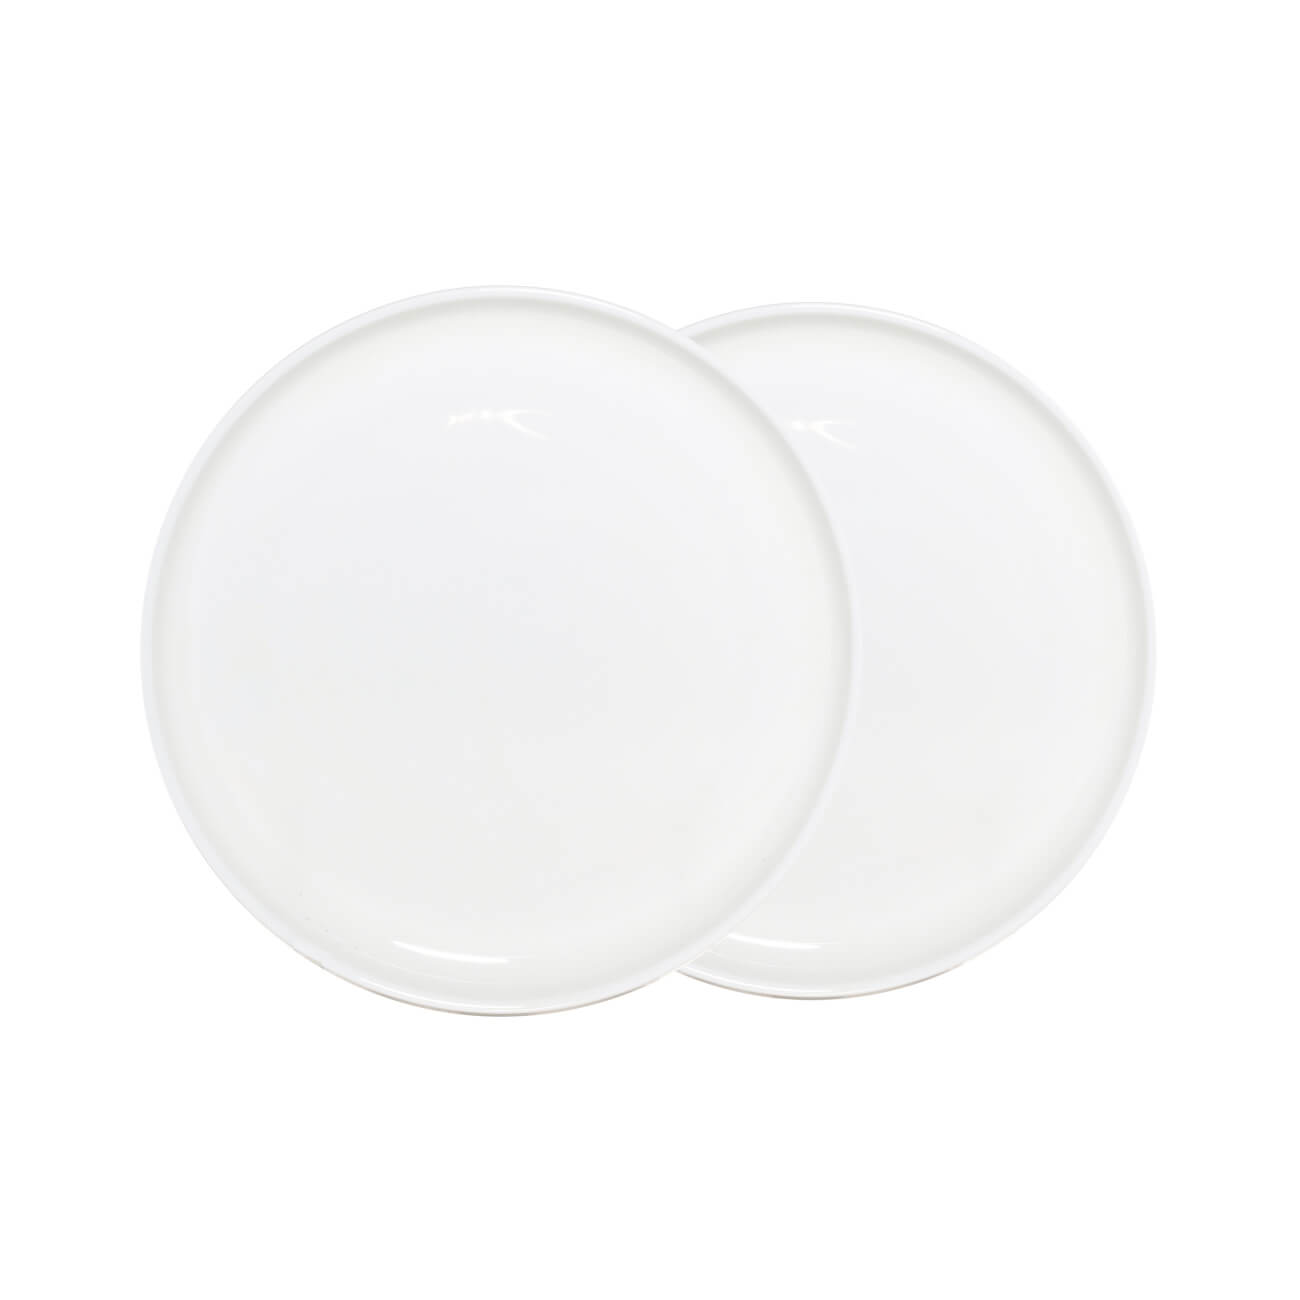 Тарелка десертная, 20 см, 2 шт, фарфор F, белая, Ideal white кружка 450 мл 2 шт фарфор f белая ideal white